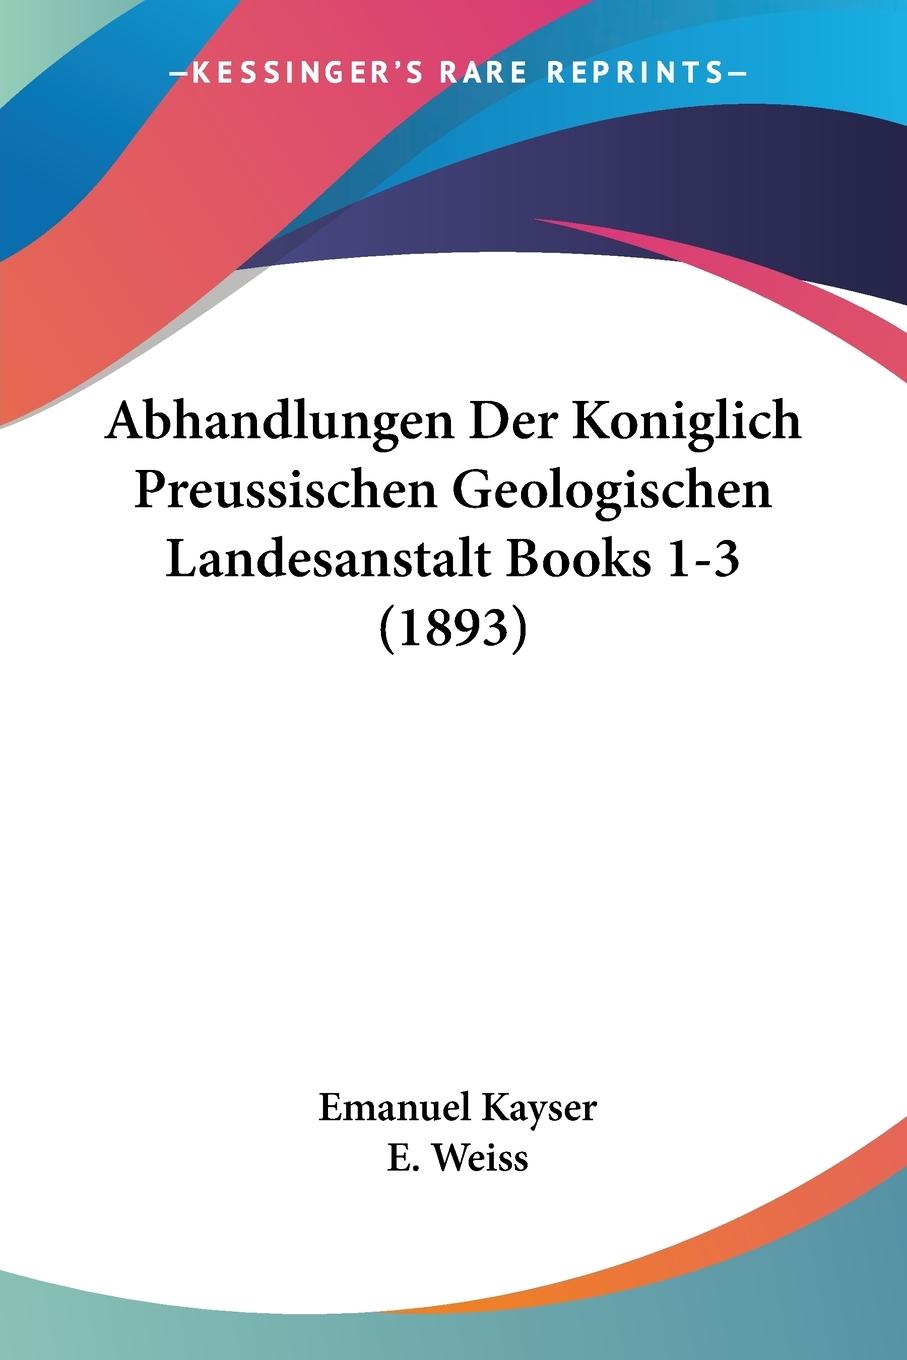 Abhandlungen Der Koniglich Preussischen Geologischen Landesanstalt Books 1-3 (1893) - Kayser, Emanuel Weiss, E.